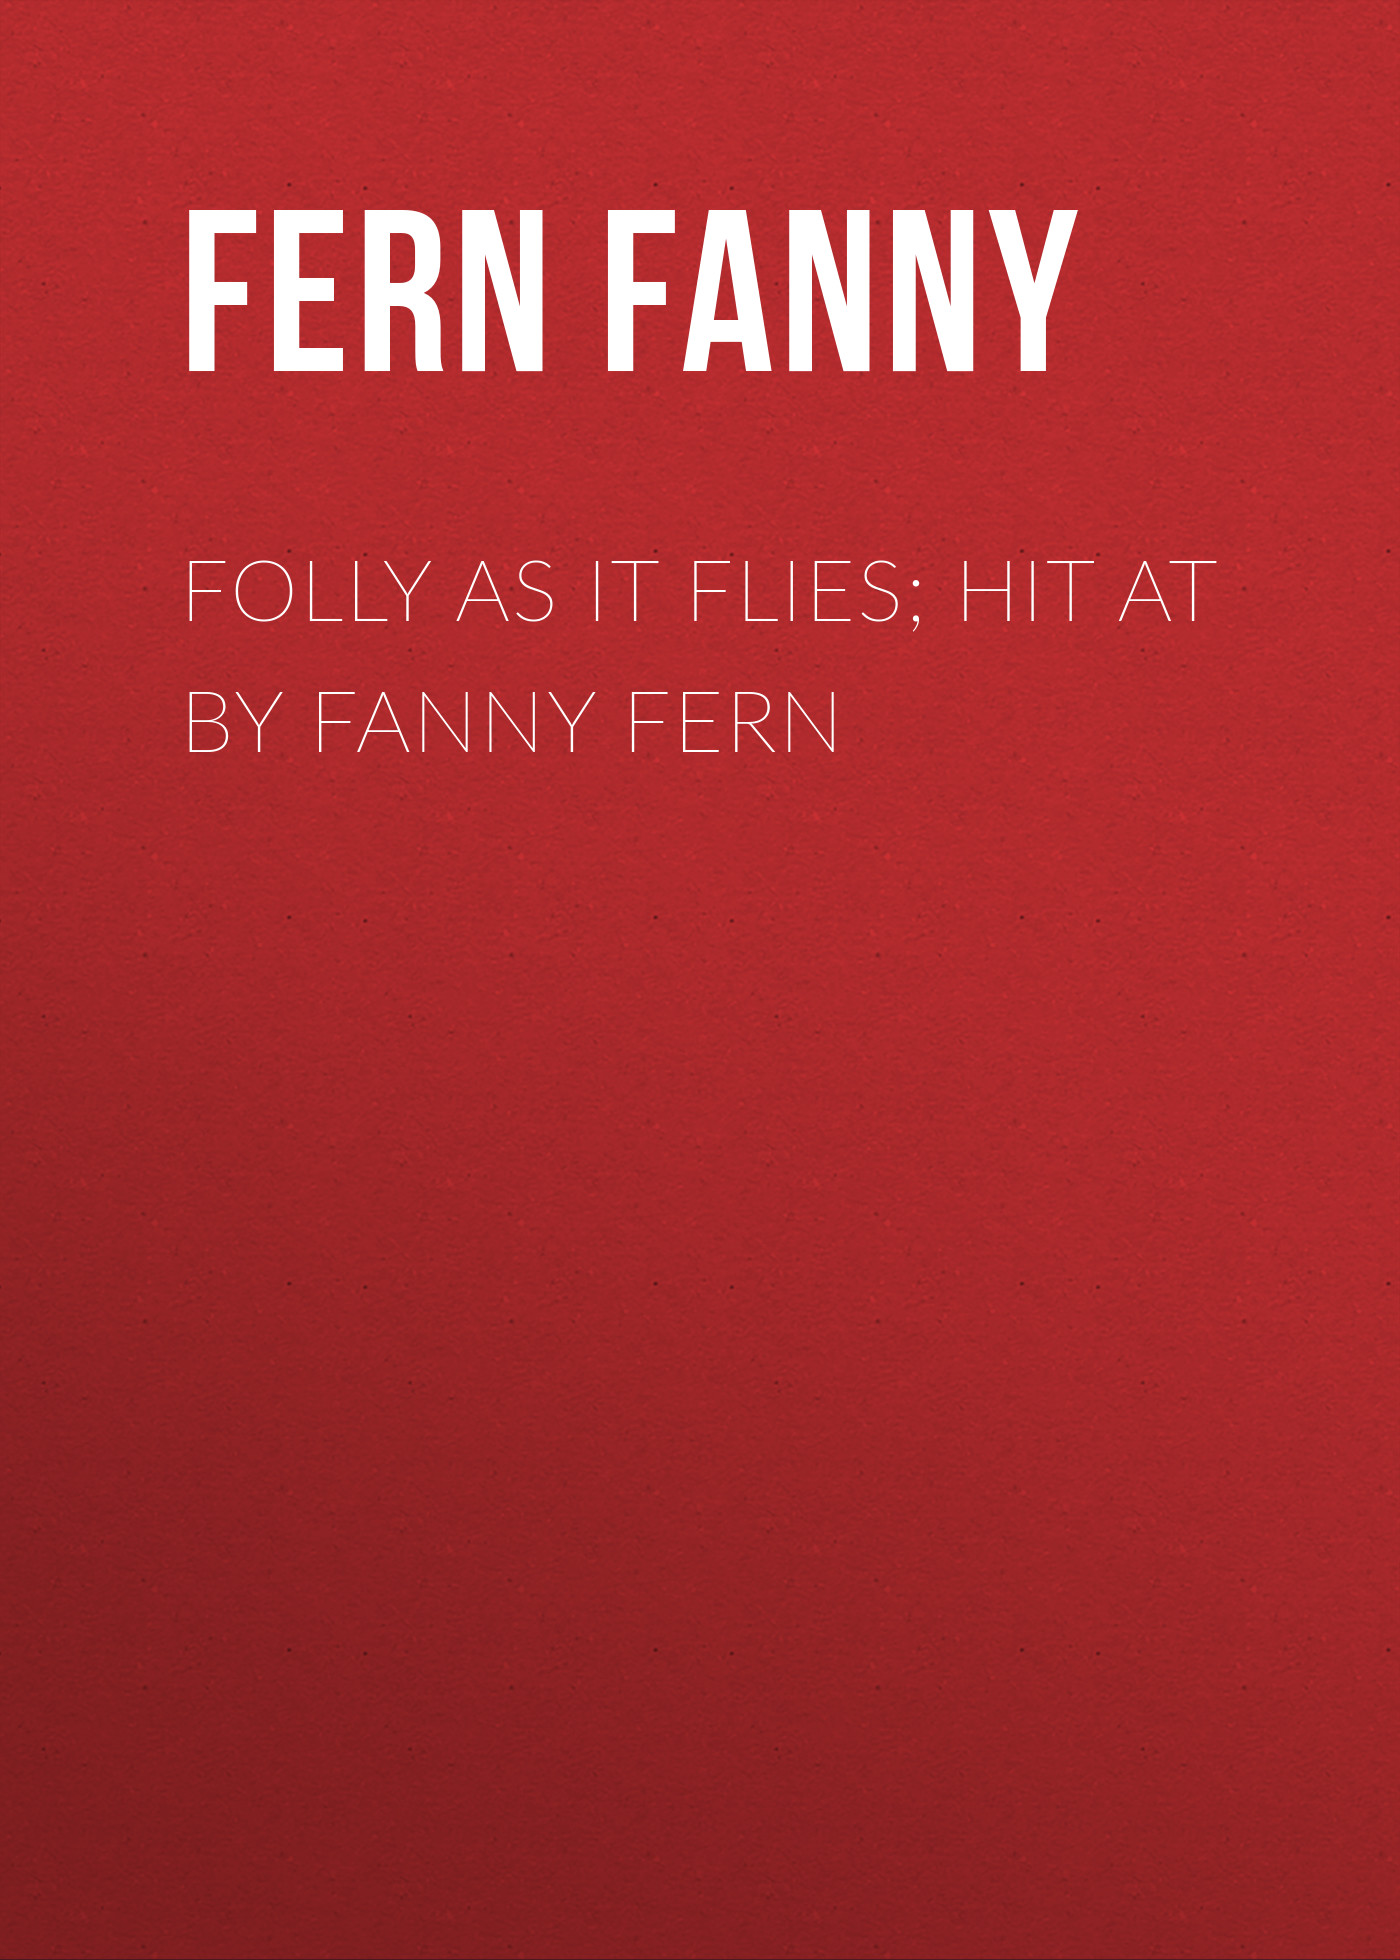 Книга Folly as It Flies; Hit at by Fanny Fern из серии , созданная Fanny Fern, может относится к жанру Литература 19 века, Зарубежная старинная литература, Зарубежная классика, Эссе. Стоимость электронной книги Folly as It Flies; Hit at by Fanny Fern с идентификатором 24726313 составляет 0 руб.